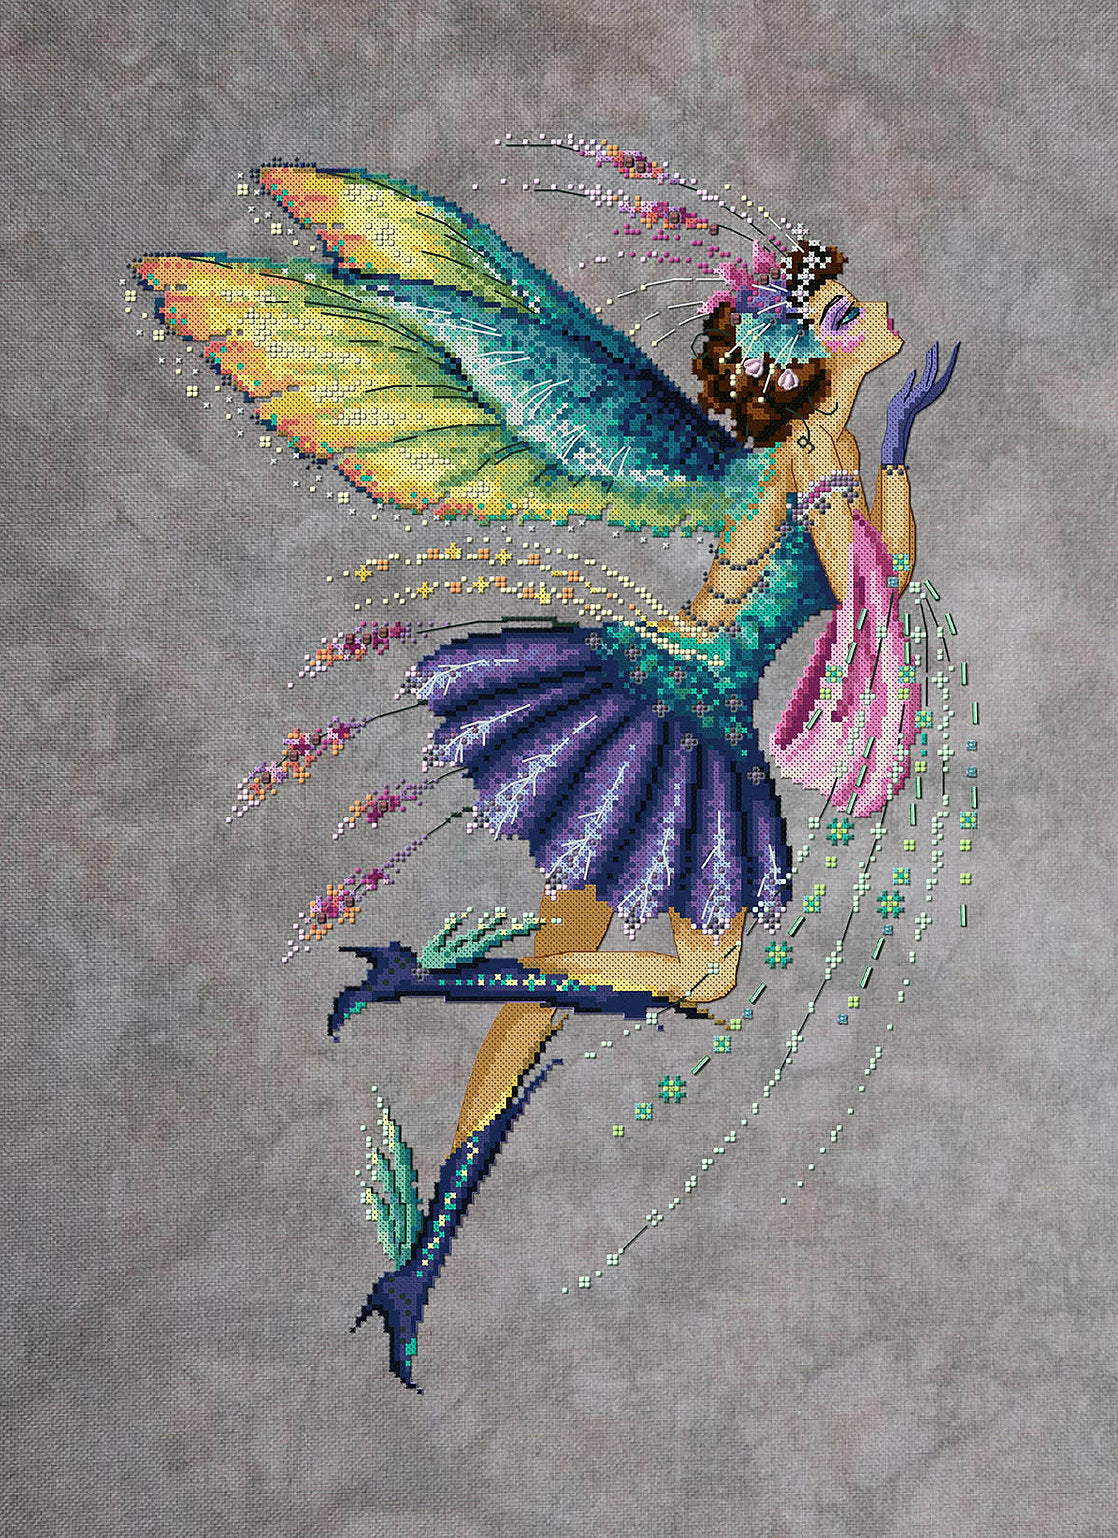 Hummingbird Pixie - Bella Filipina - Cross stitch chart BF035